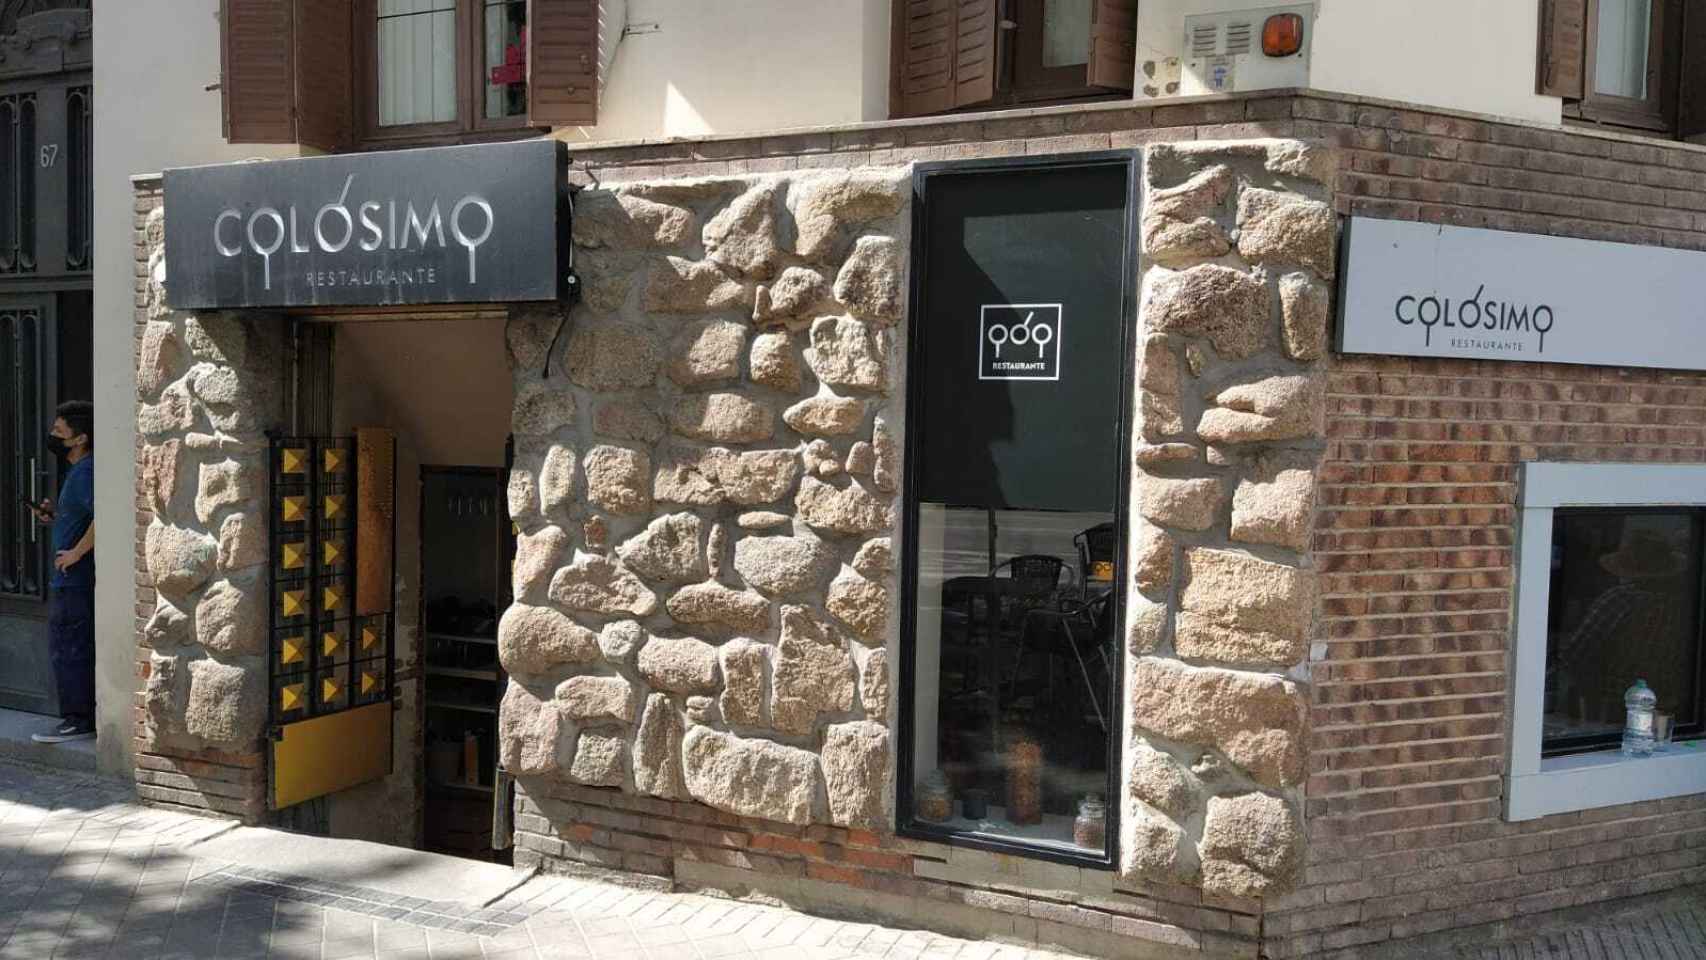 El restaurante Colósimo, situado en el número 67 de la calle de José Ortega y Gasset.